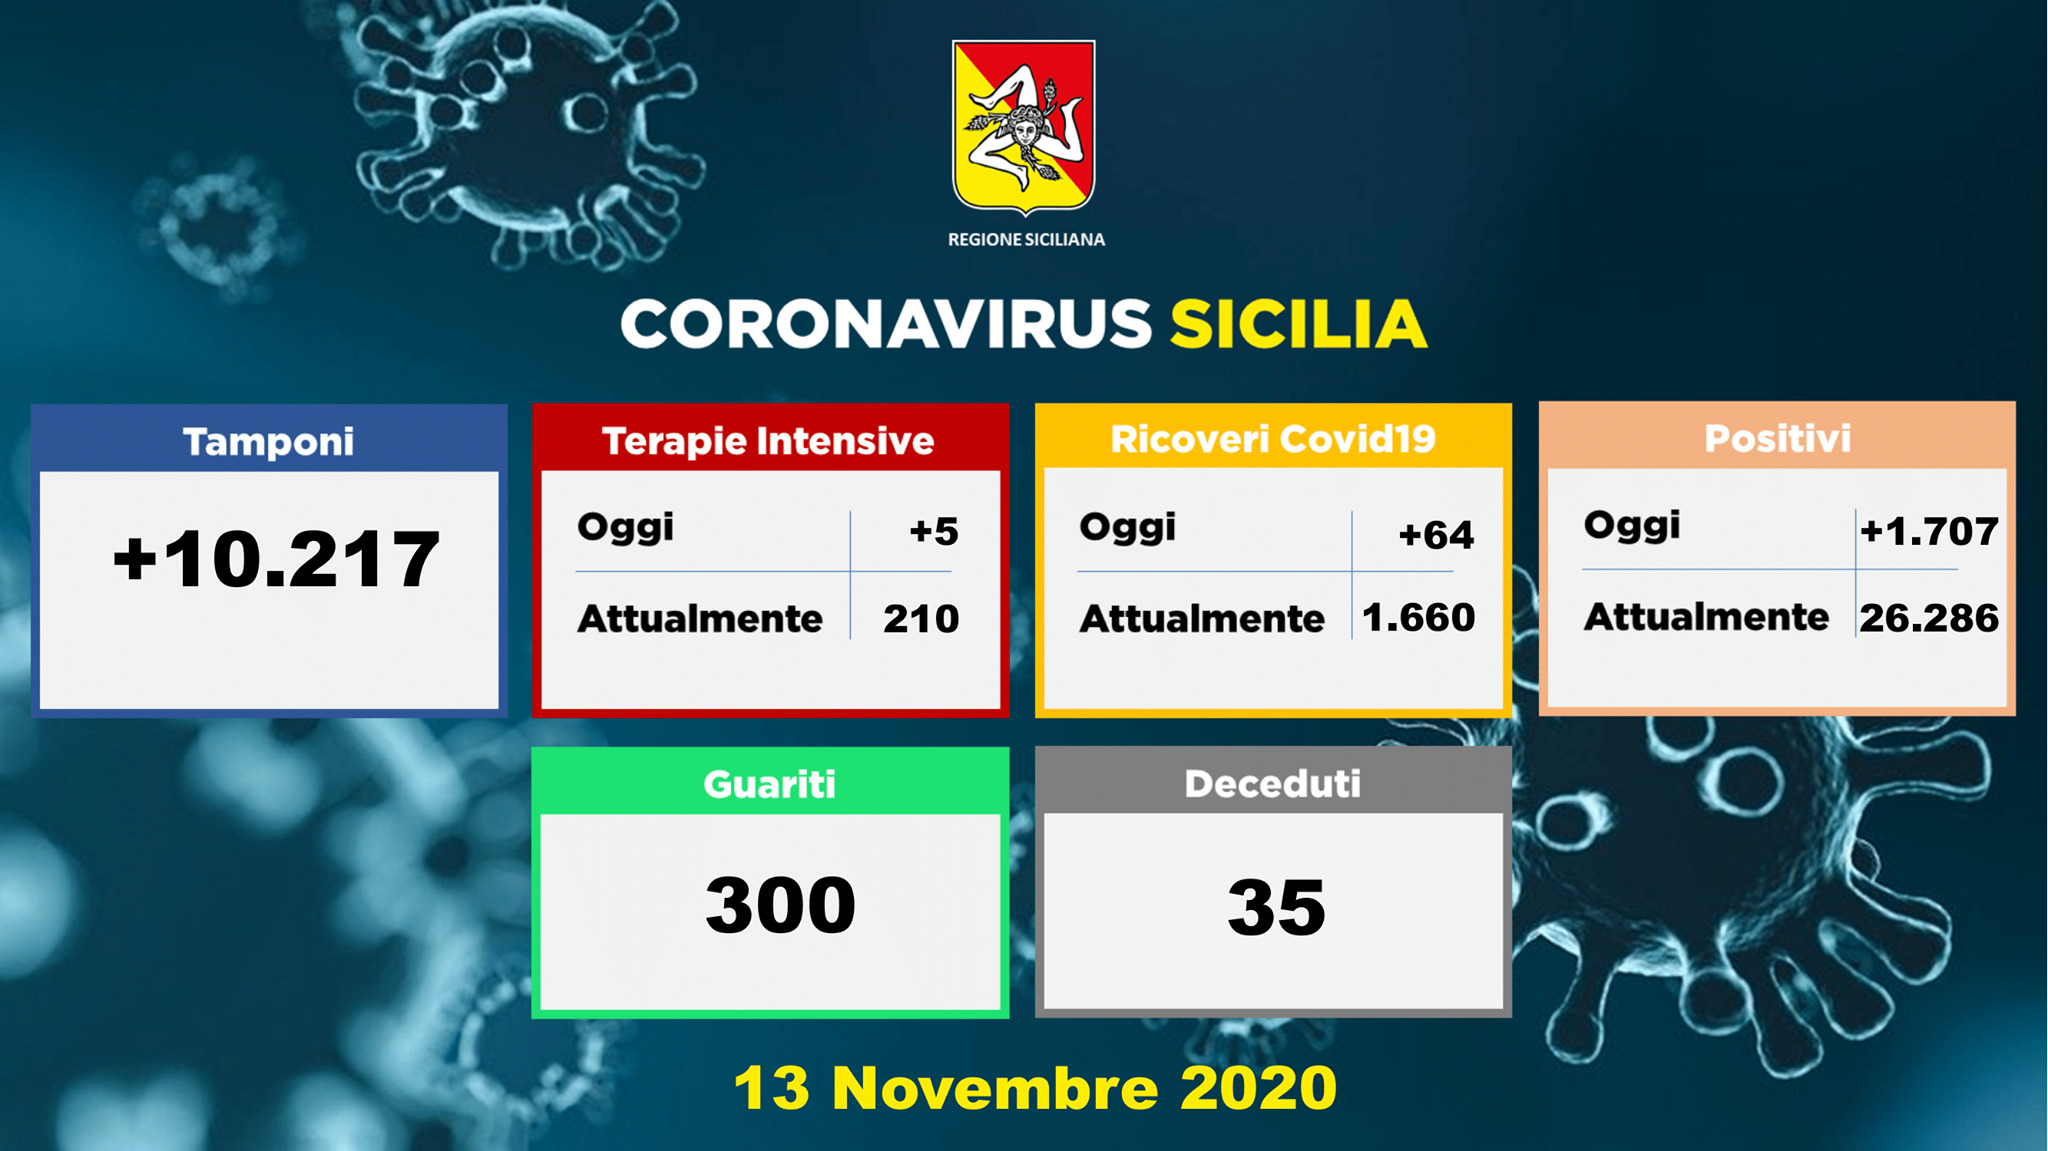 Emergenza Covid Sicilia, la situazione negli ospedali: 64 nuovi ricoveri, 5 pazienti in Terapia Intensiva – I DATI